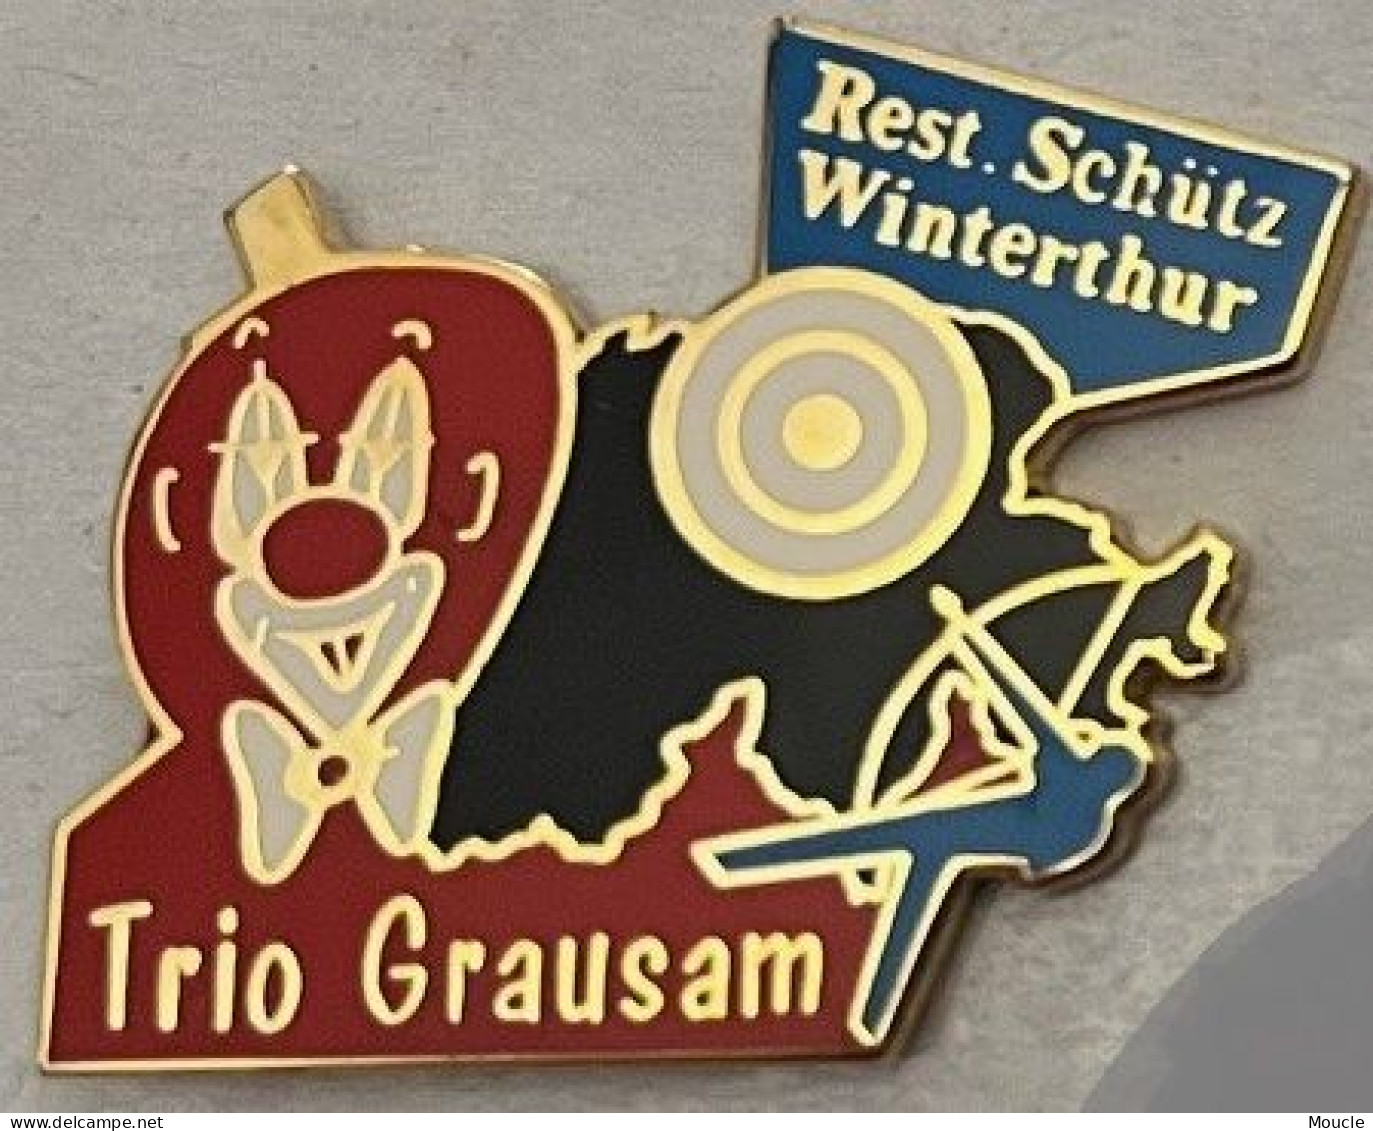 TIR A L'ARC CLUB -  TRIO GRAUSAM - CLOWN - REST. SCHÜTZ - WINTERHUR - SUISSE - SCHWEIZ - FLECHE - CIBLE -  ARCHER - (34) - Boogschieten